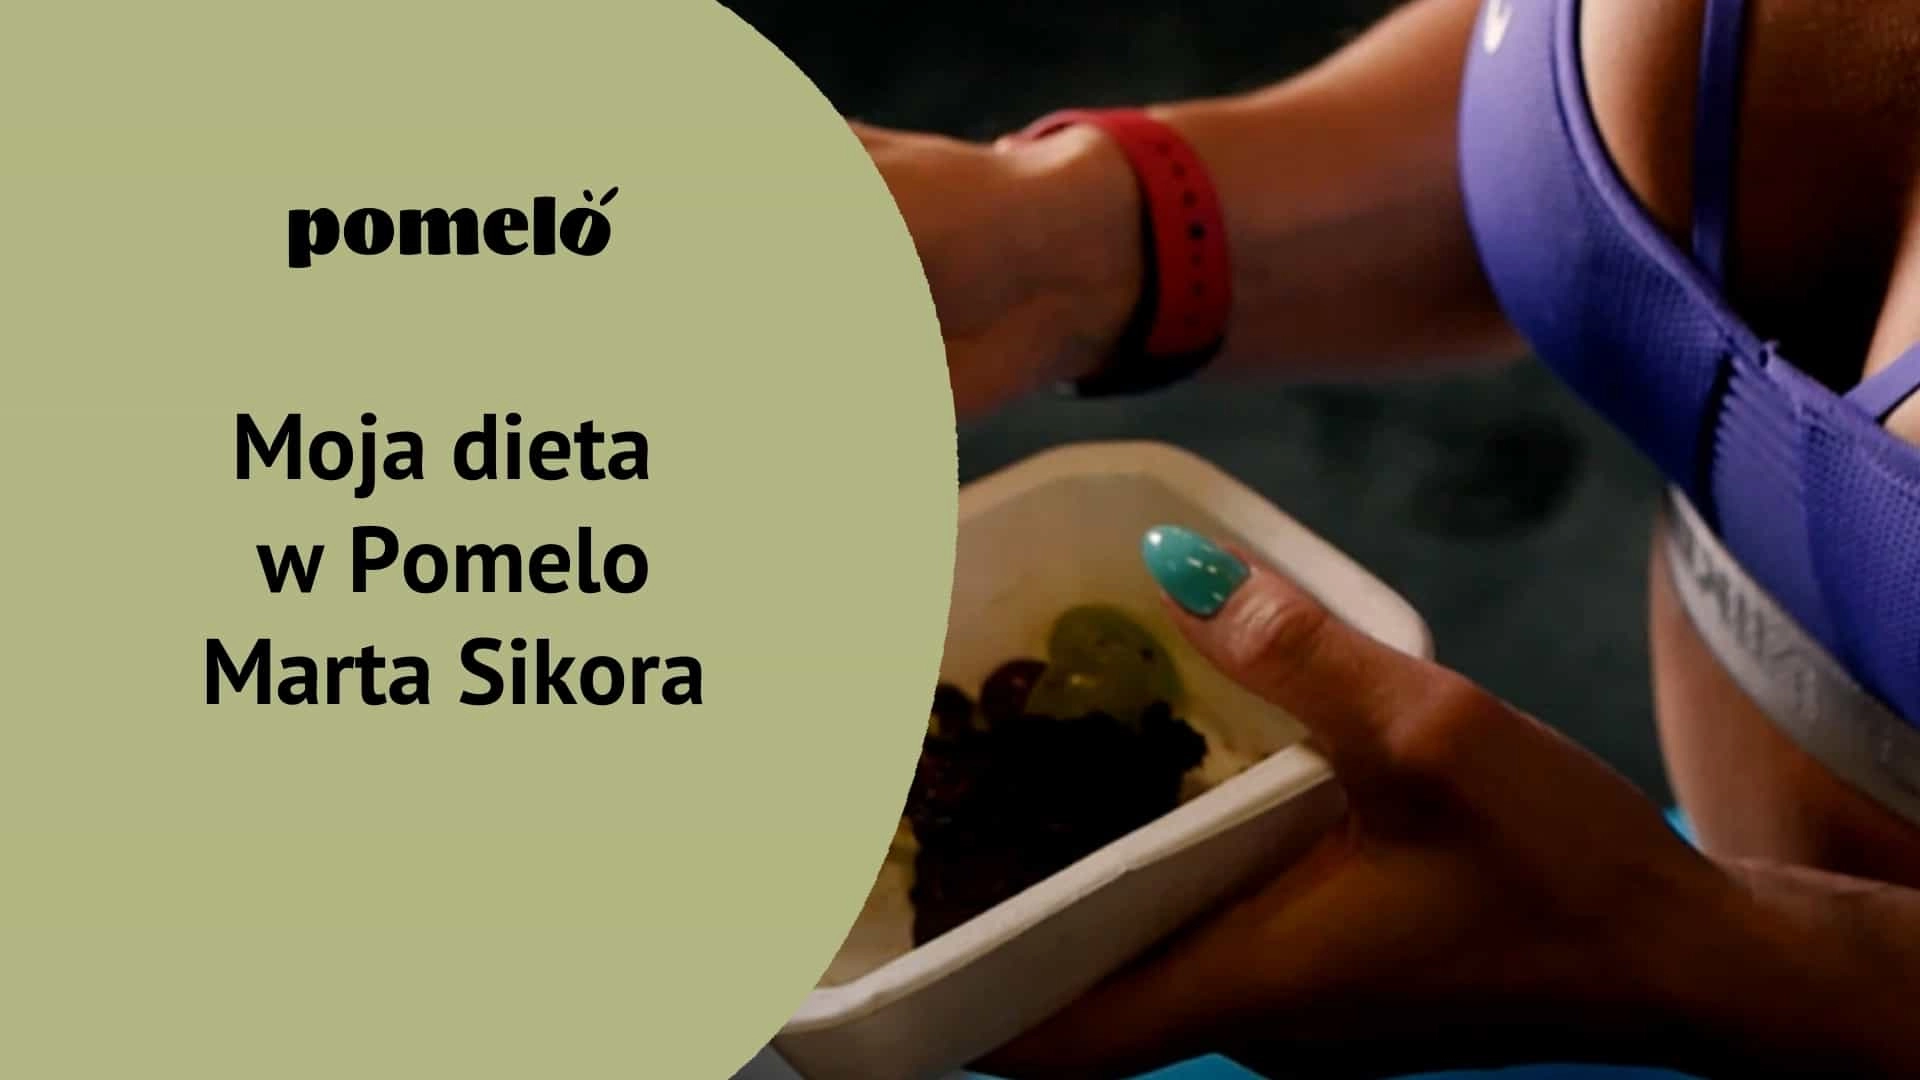 Moja dieta w Pomelo - Marta Sikora trenerka animalflow catering dietetyczny